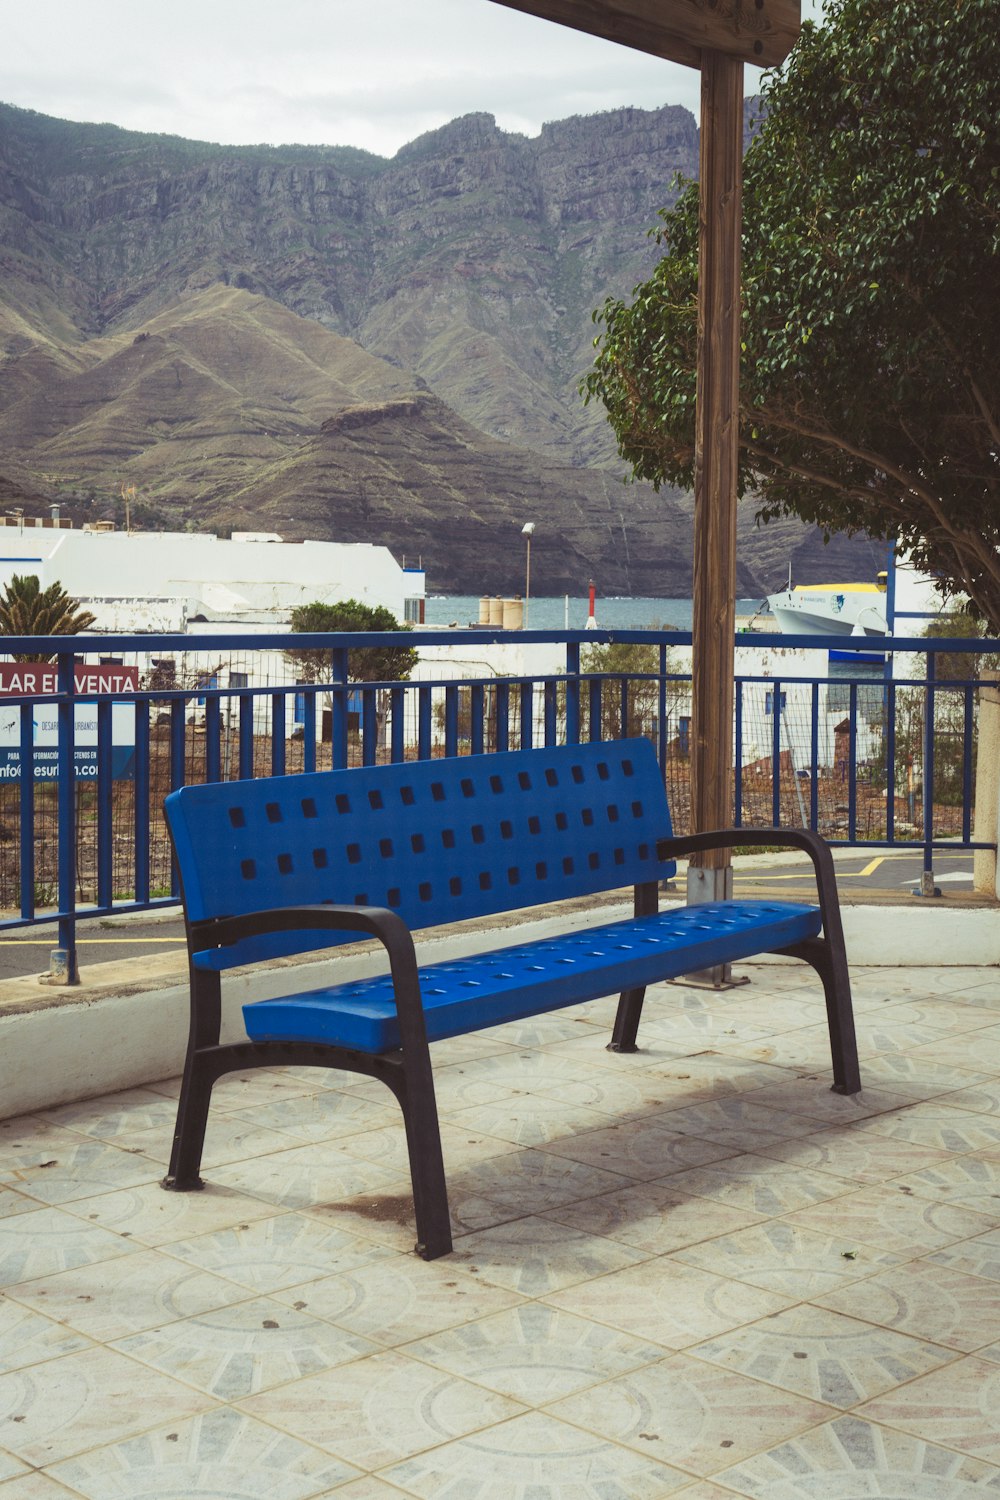 a blue bench sits on a sidewalk